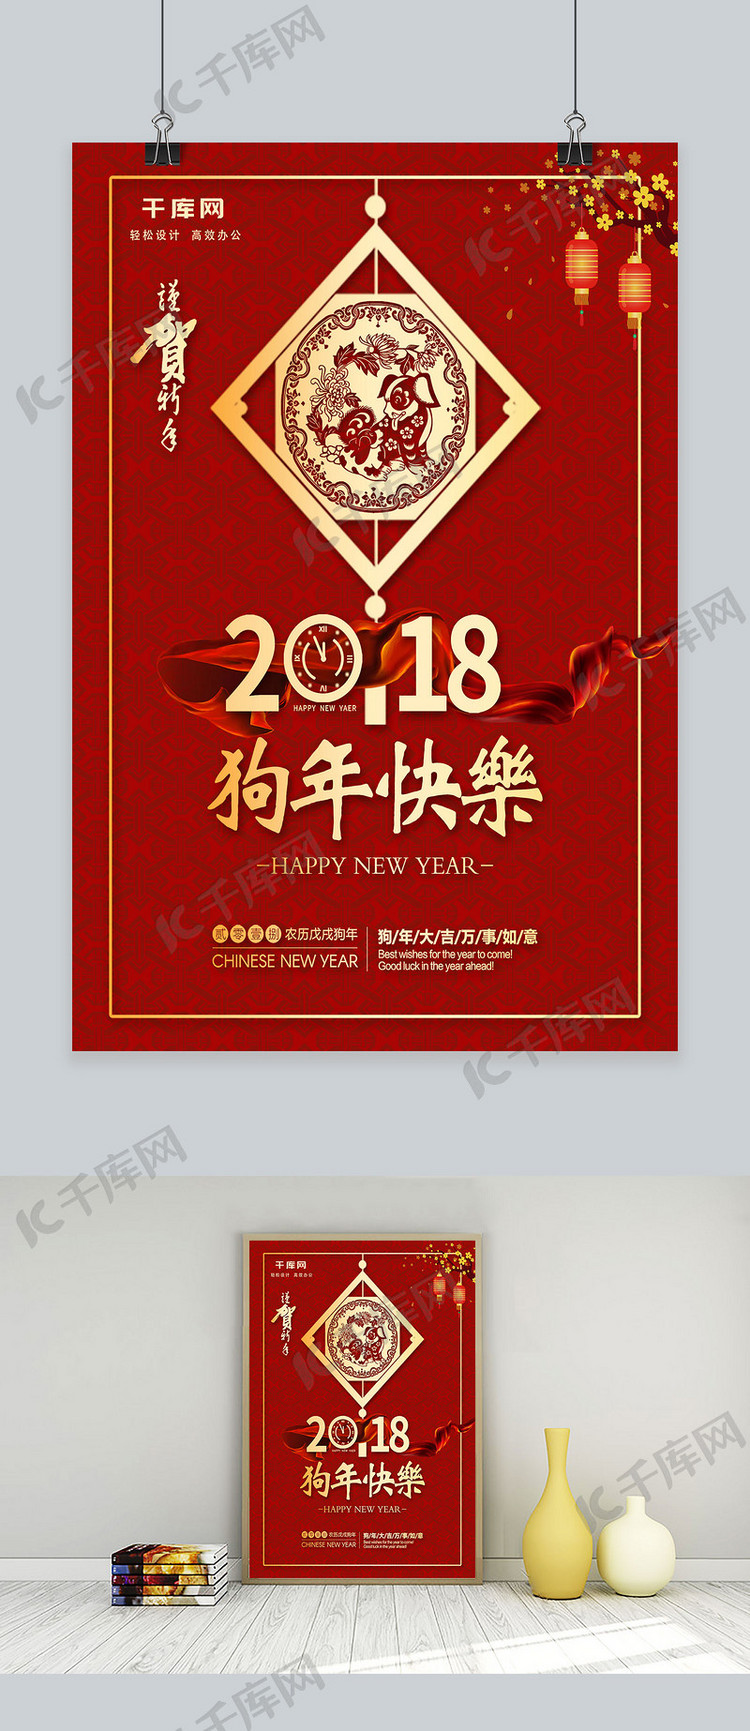 红色喜庆2018狗年快乐宣传海报